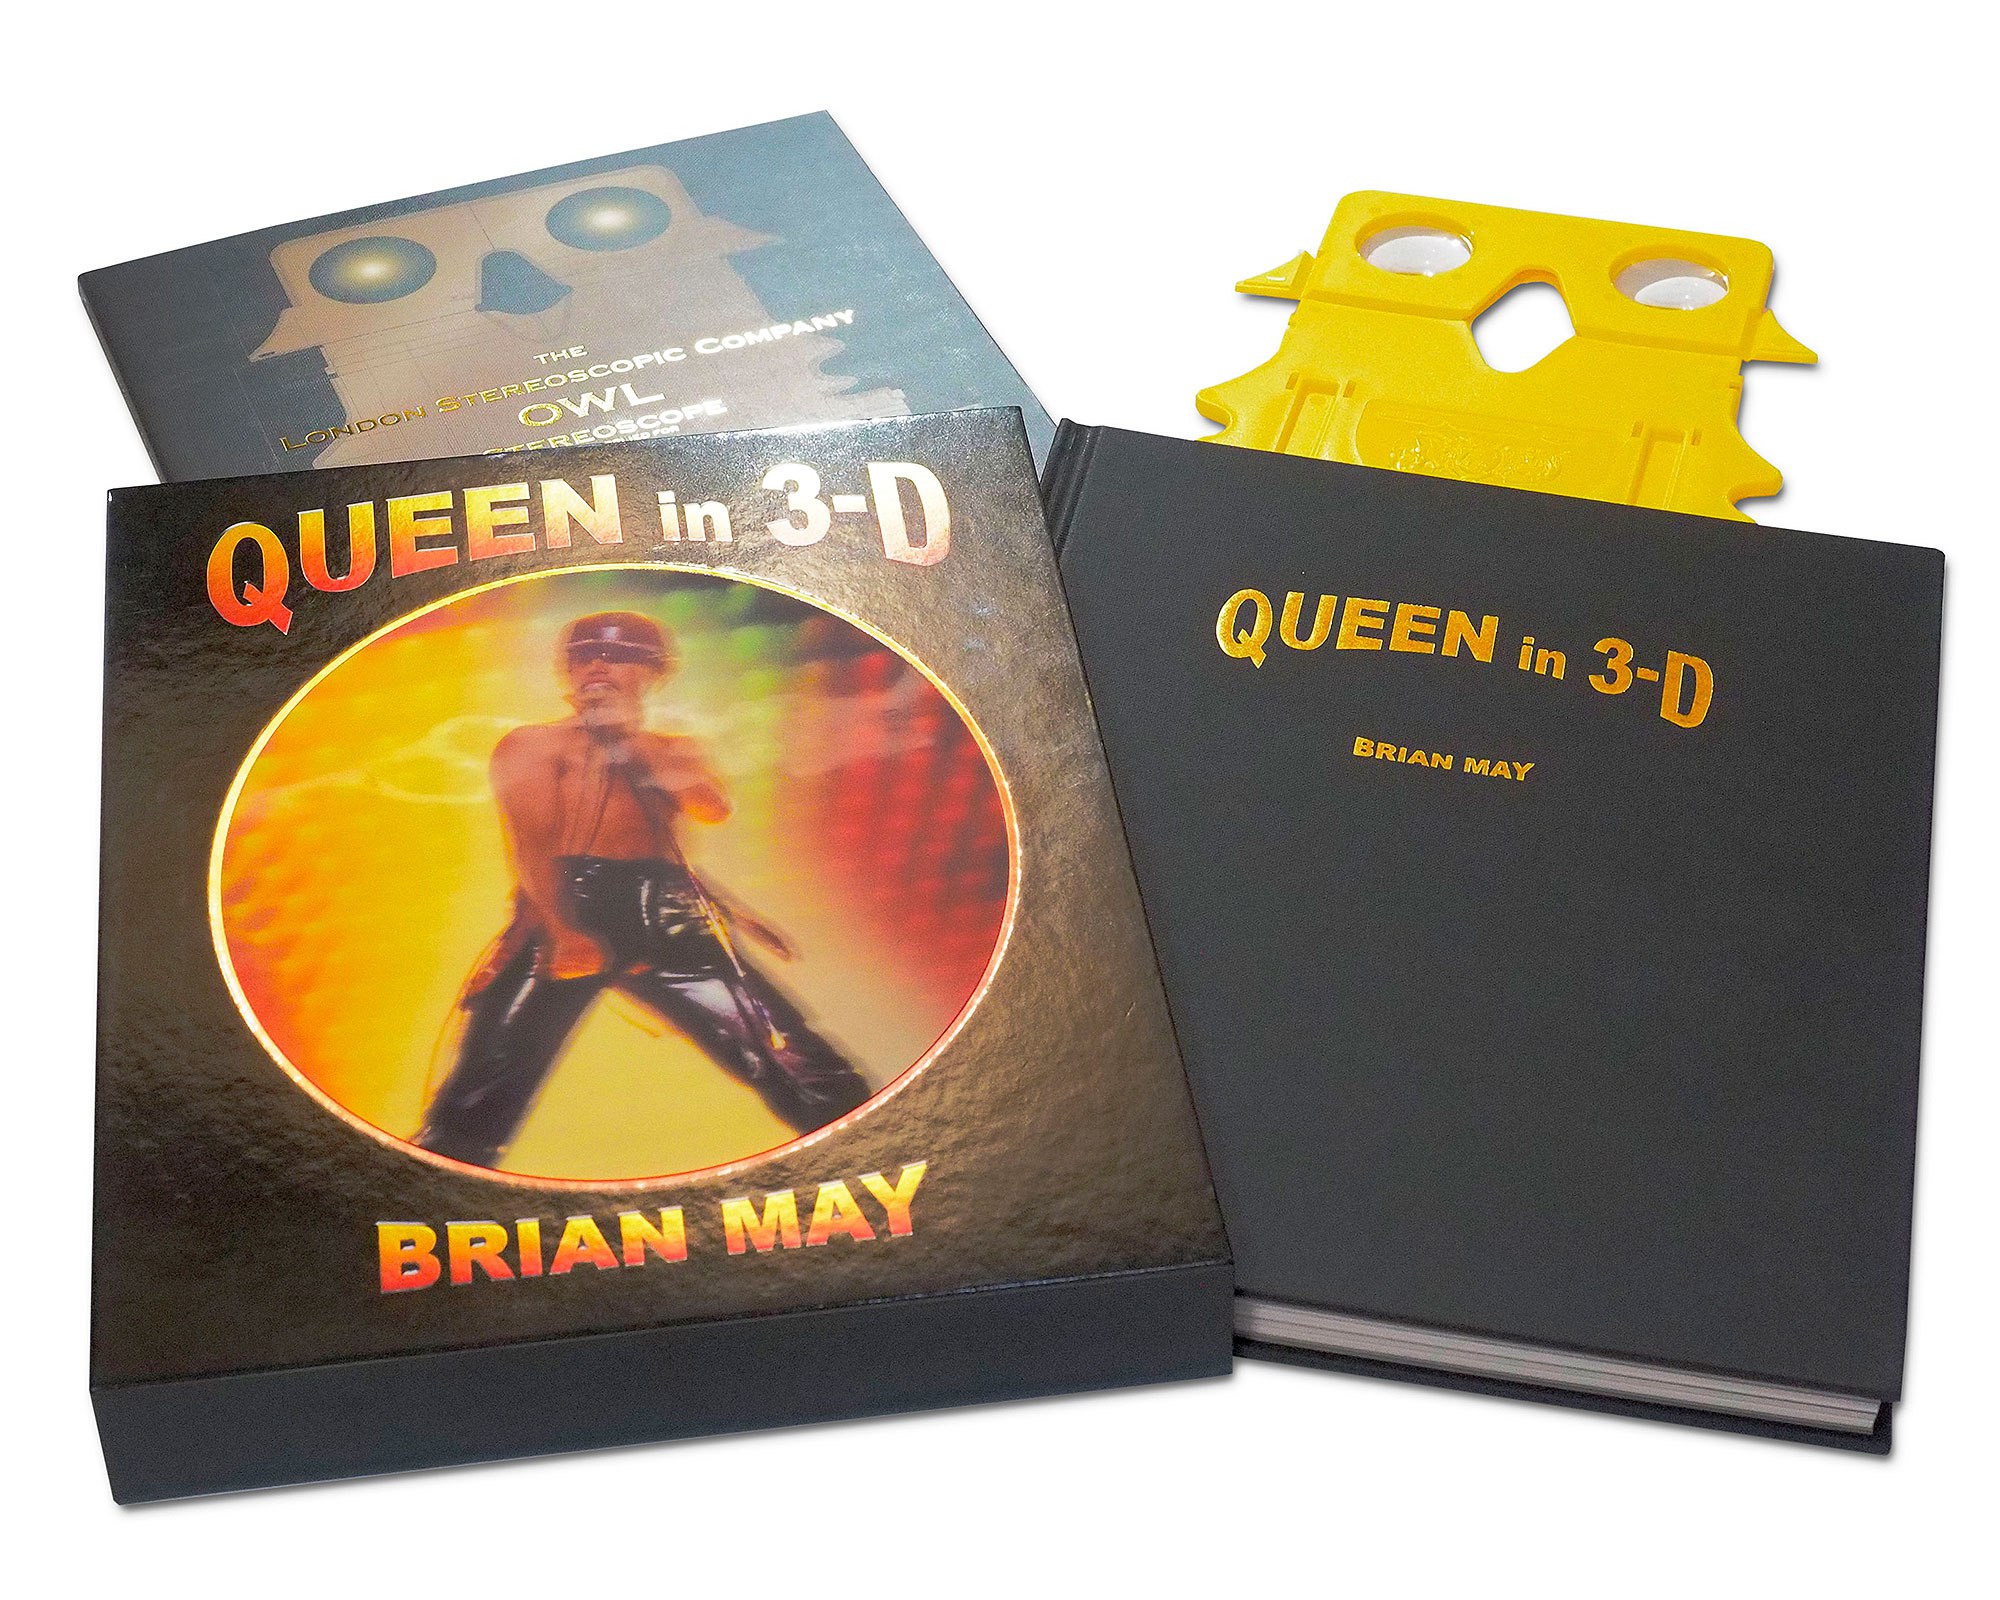 Queen in 3-D spread